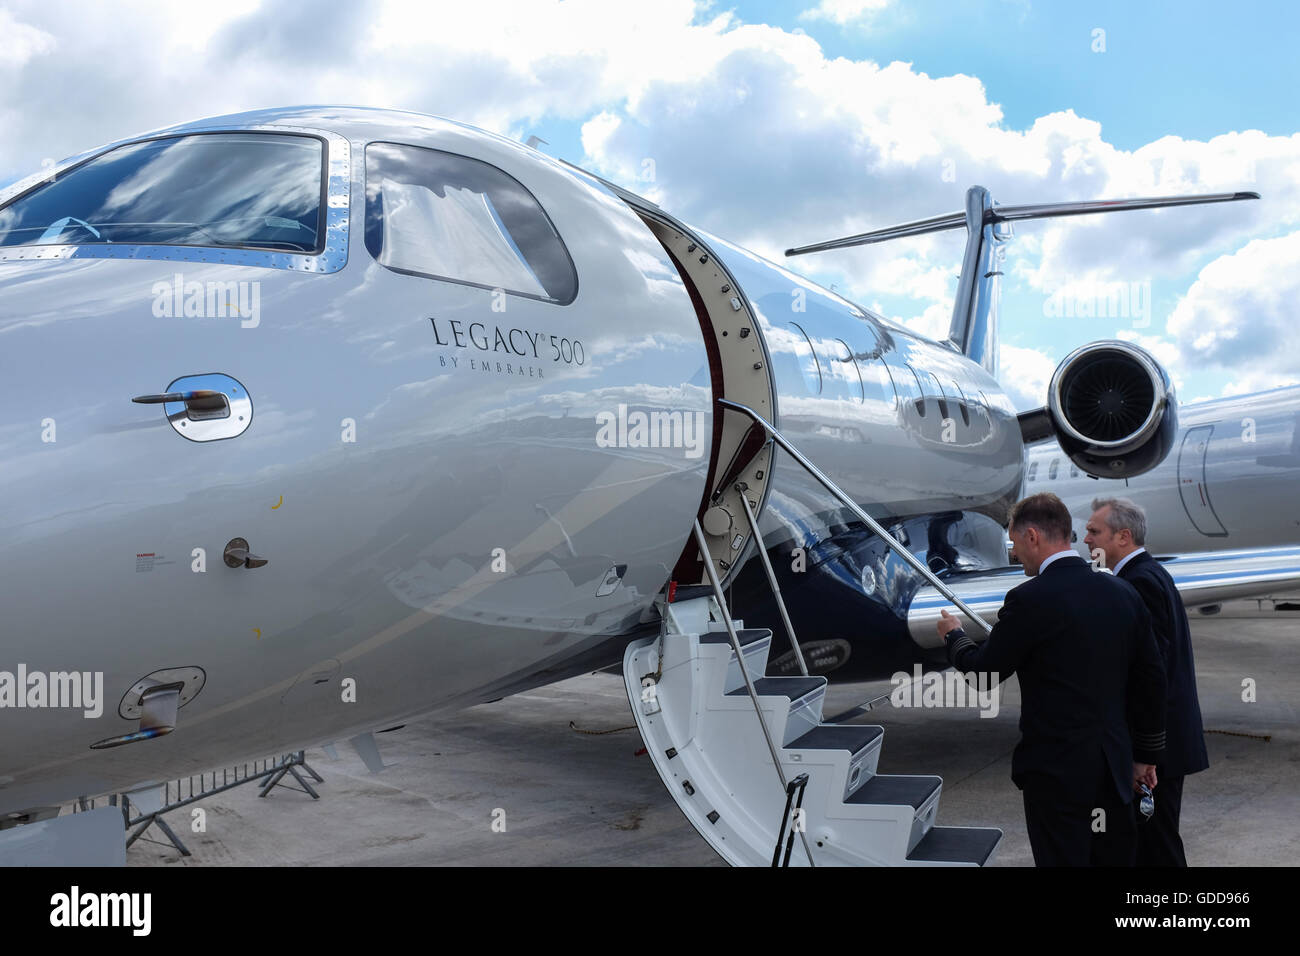 El legado de 500 jets de negocios por Embraer. Foto de stock